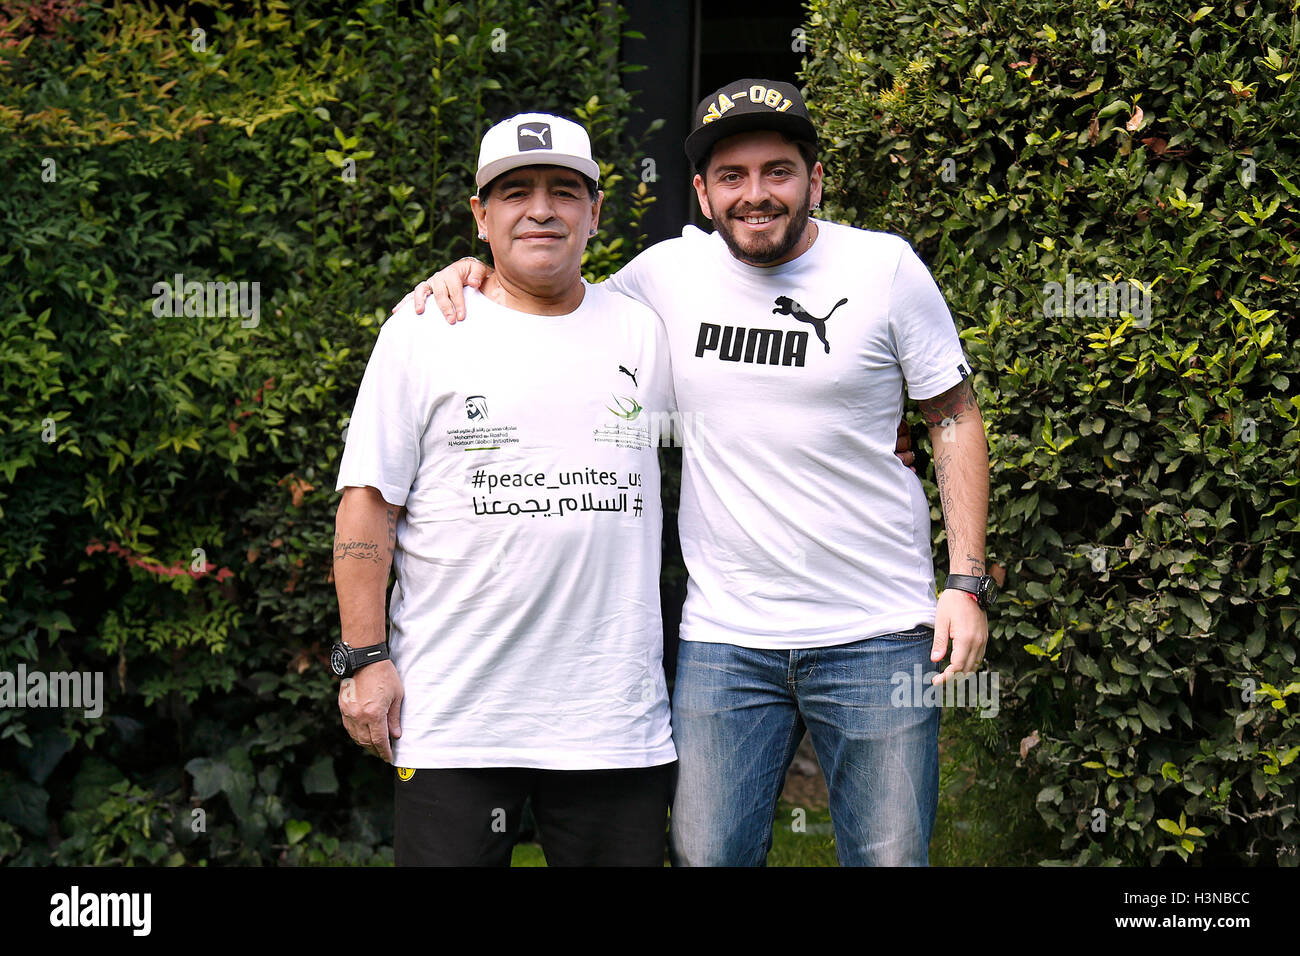 Download Maradona Son Pics